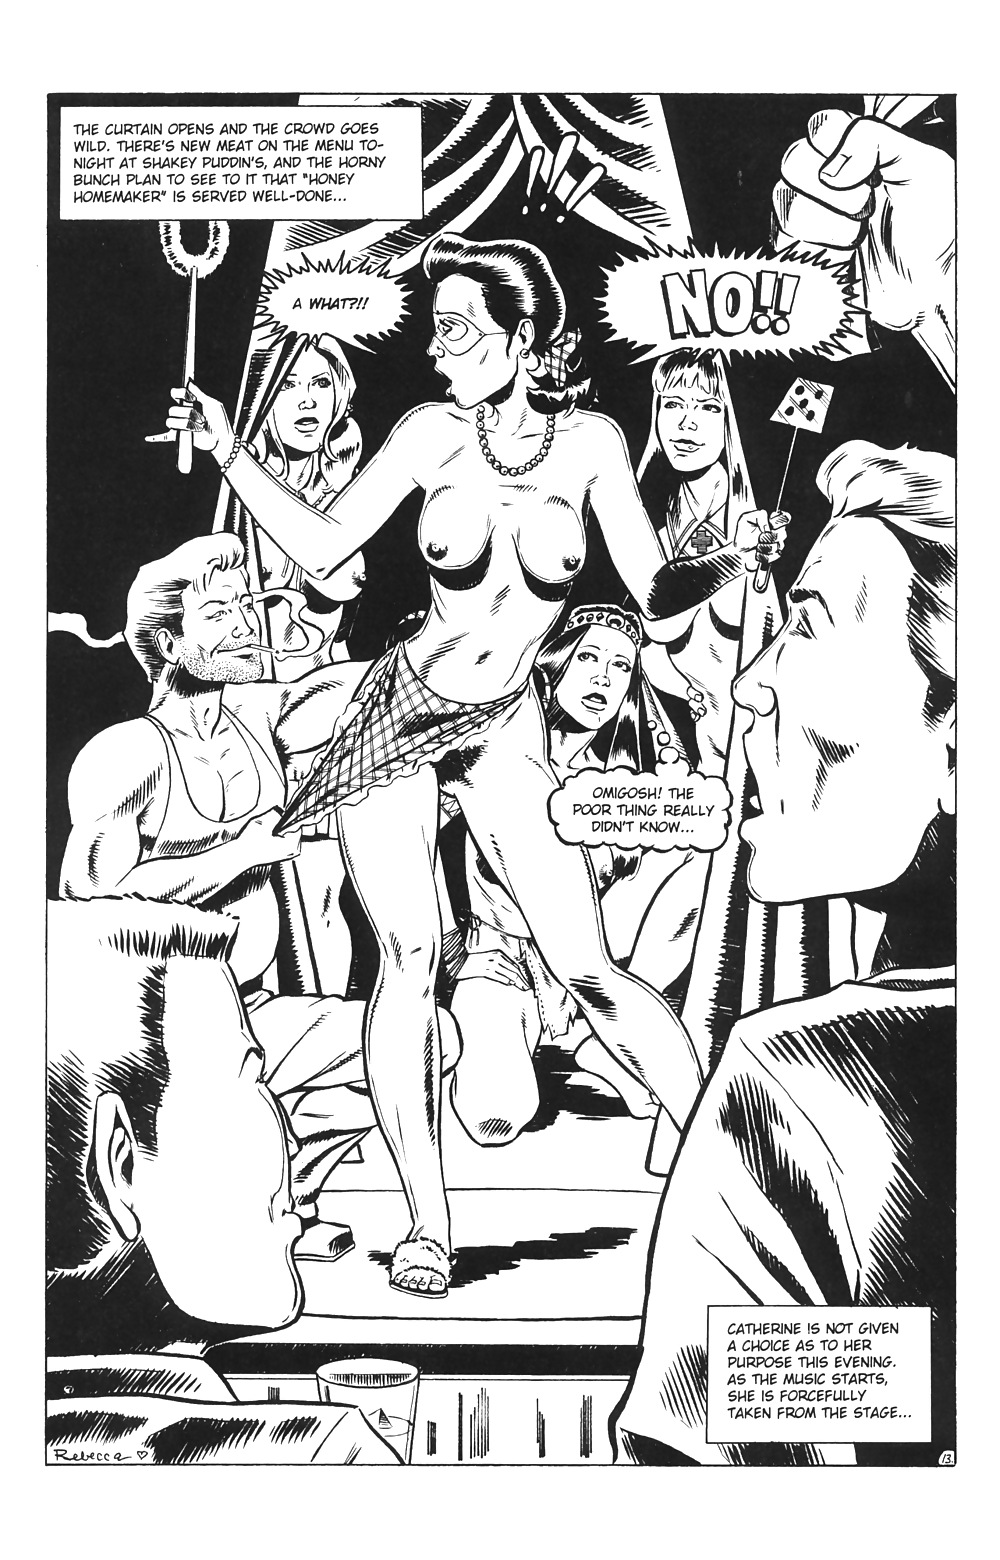 Hausfrauen Am Spiel # 03 - Eros-Comics Von Rebecca - Oktober 2001 #25714009